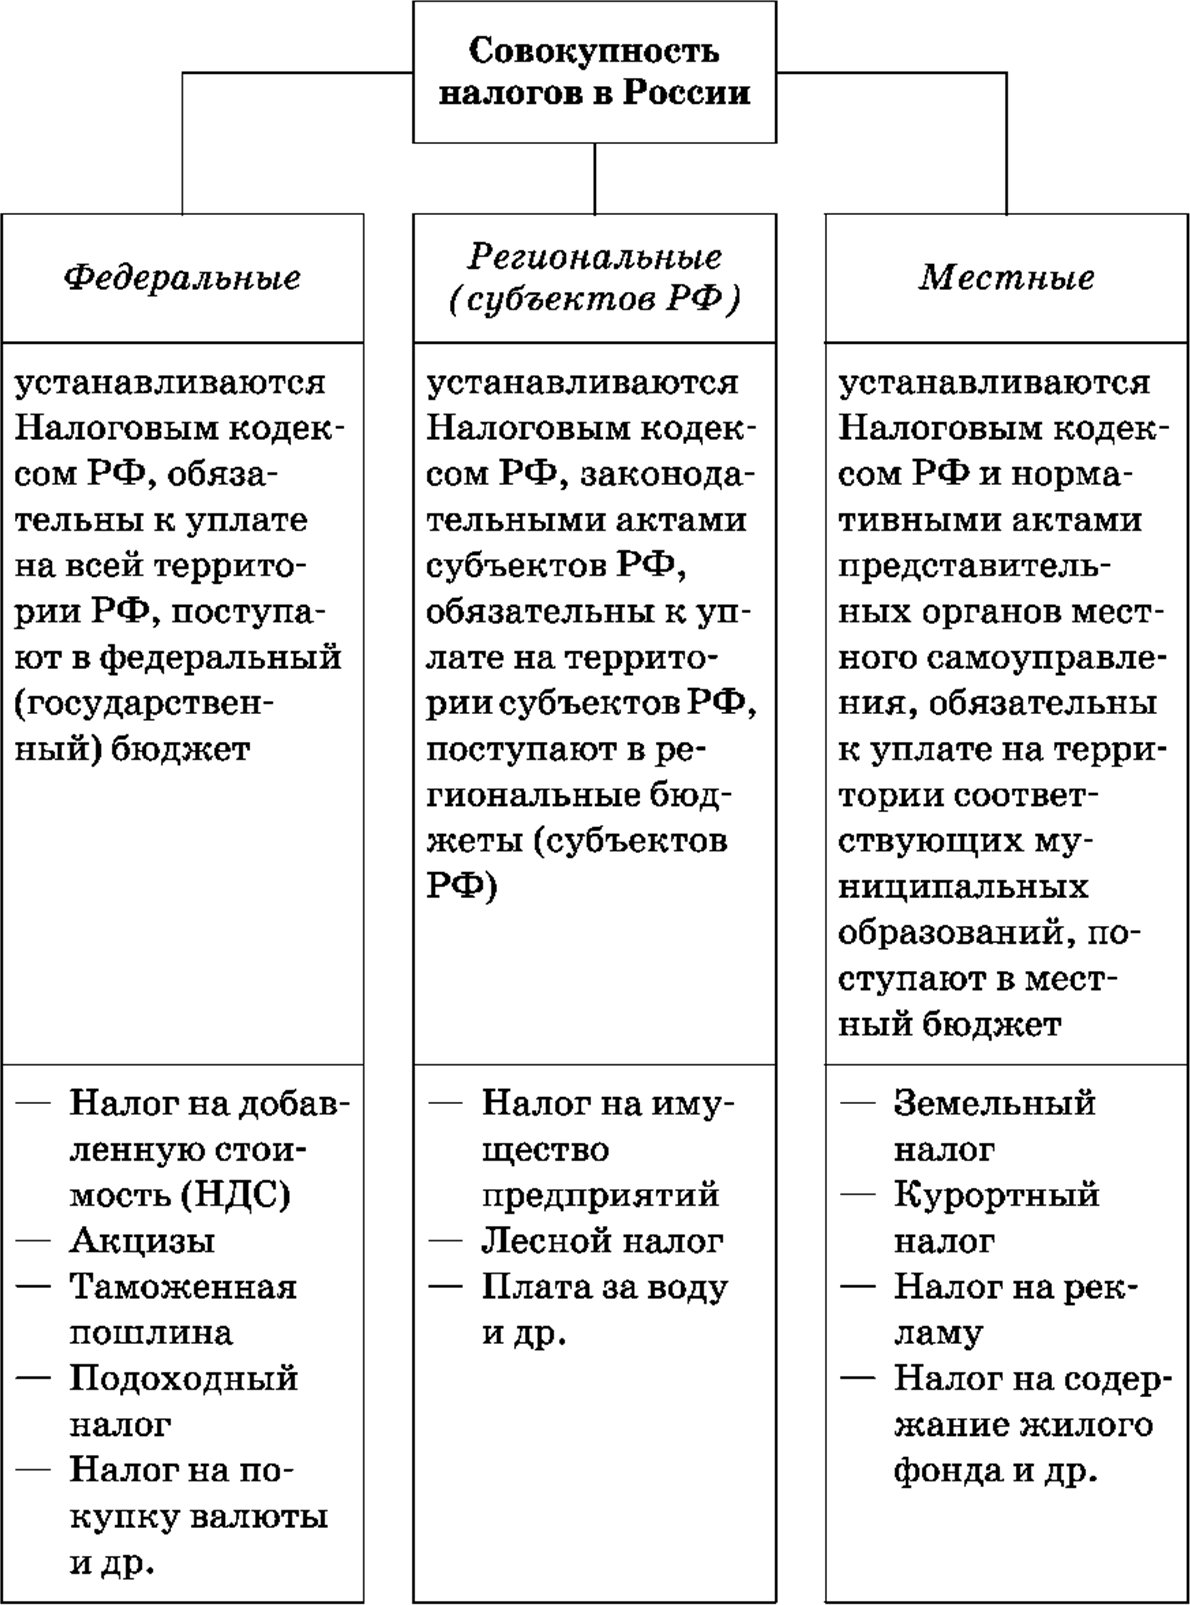 Налоги в России (федеральные, региональные, местные)